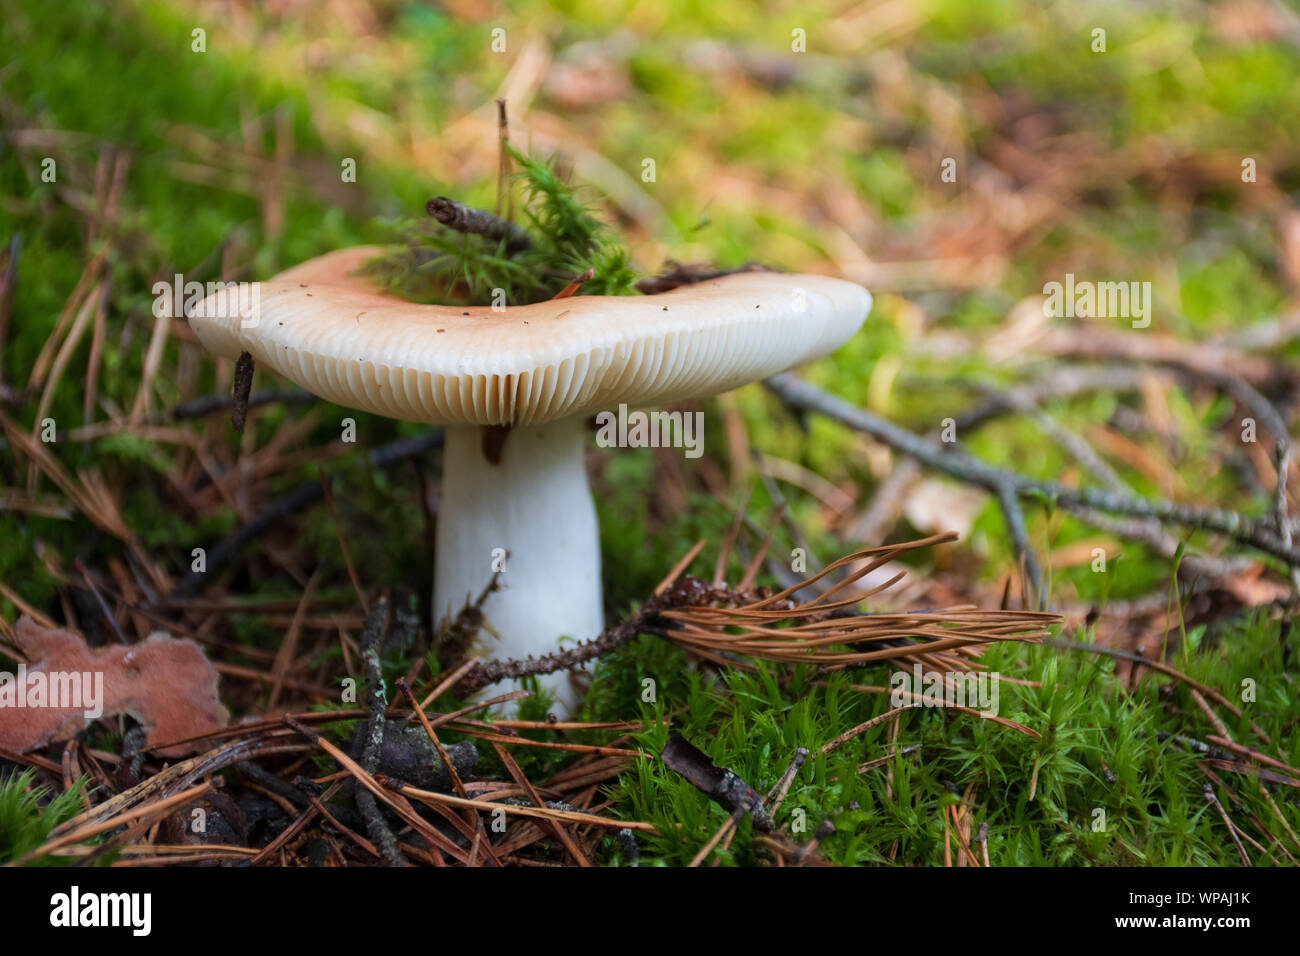 Edibili bianco nuovo nato fungo con cappuccio in moss autunno sfondo di foresta. Il fungo nell'ambiente naturale. Grosso fungo macro close up Foto Stock